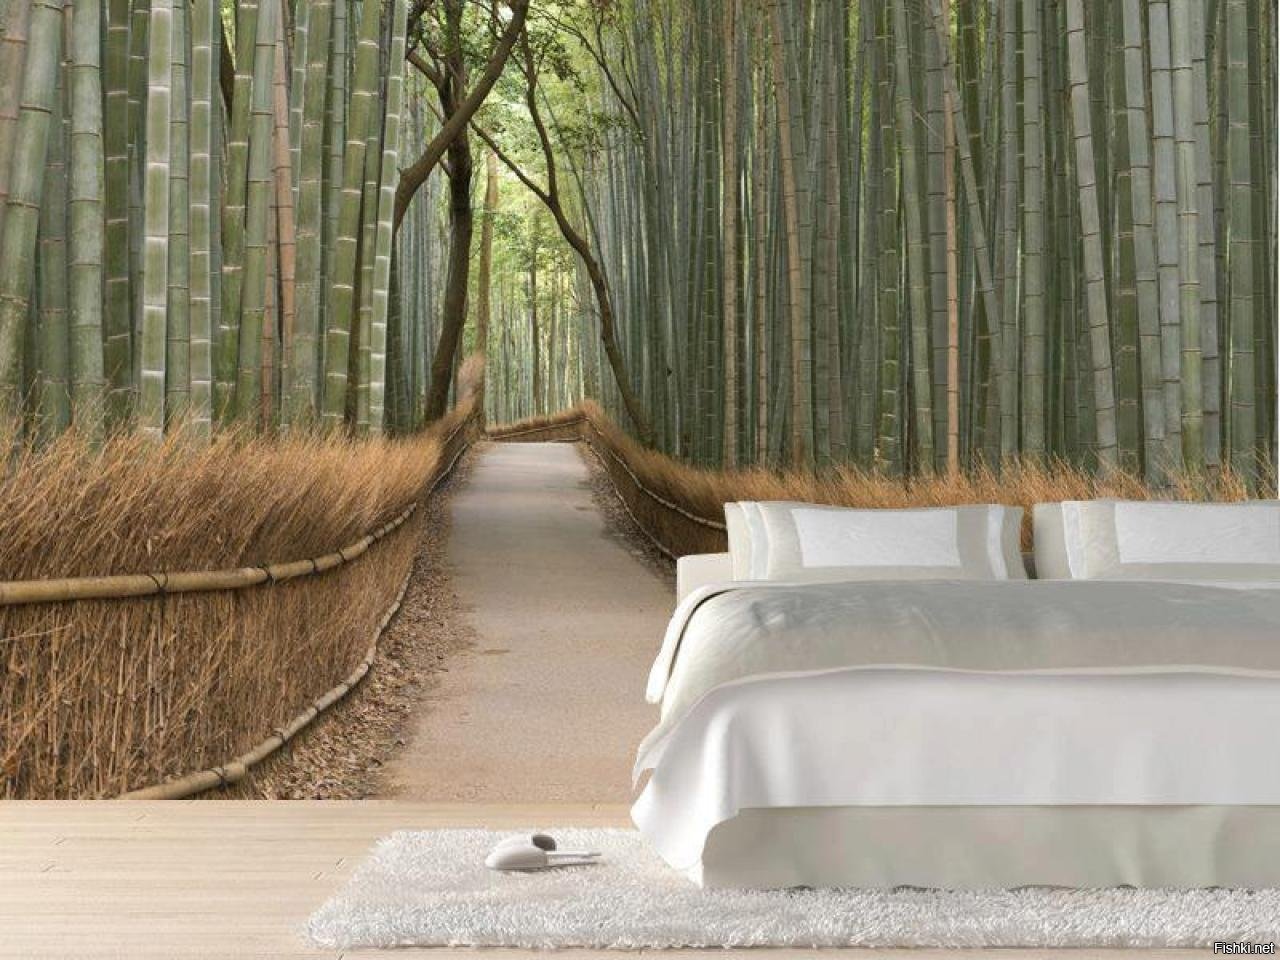 Бамбуковый лес в интерьере